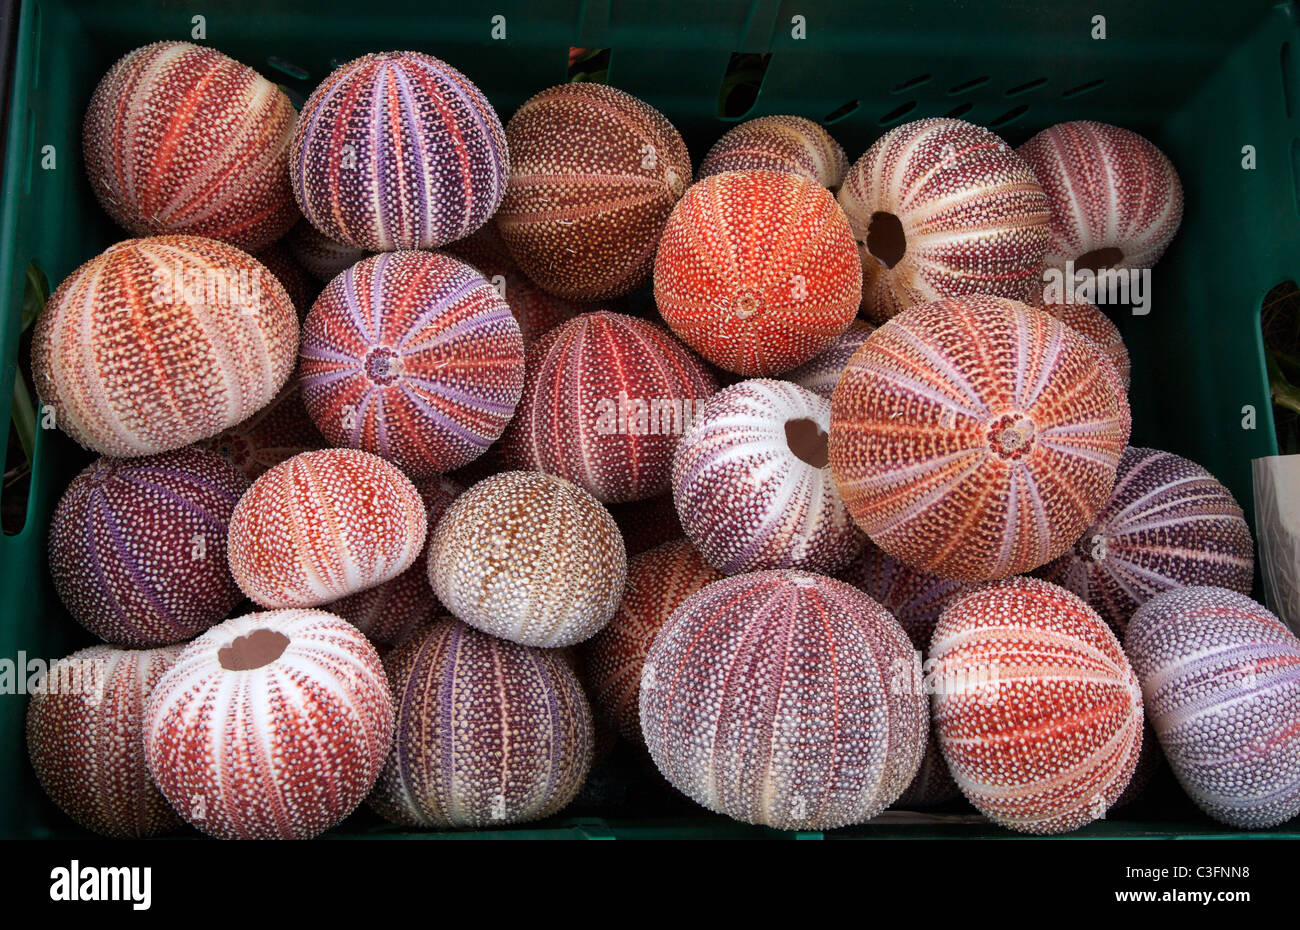 Colorata collezione di ricci di mare conchiglie per la vendita in una città di mare nel Regno Unito Foto Stock